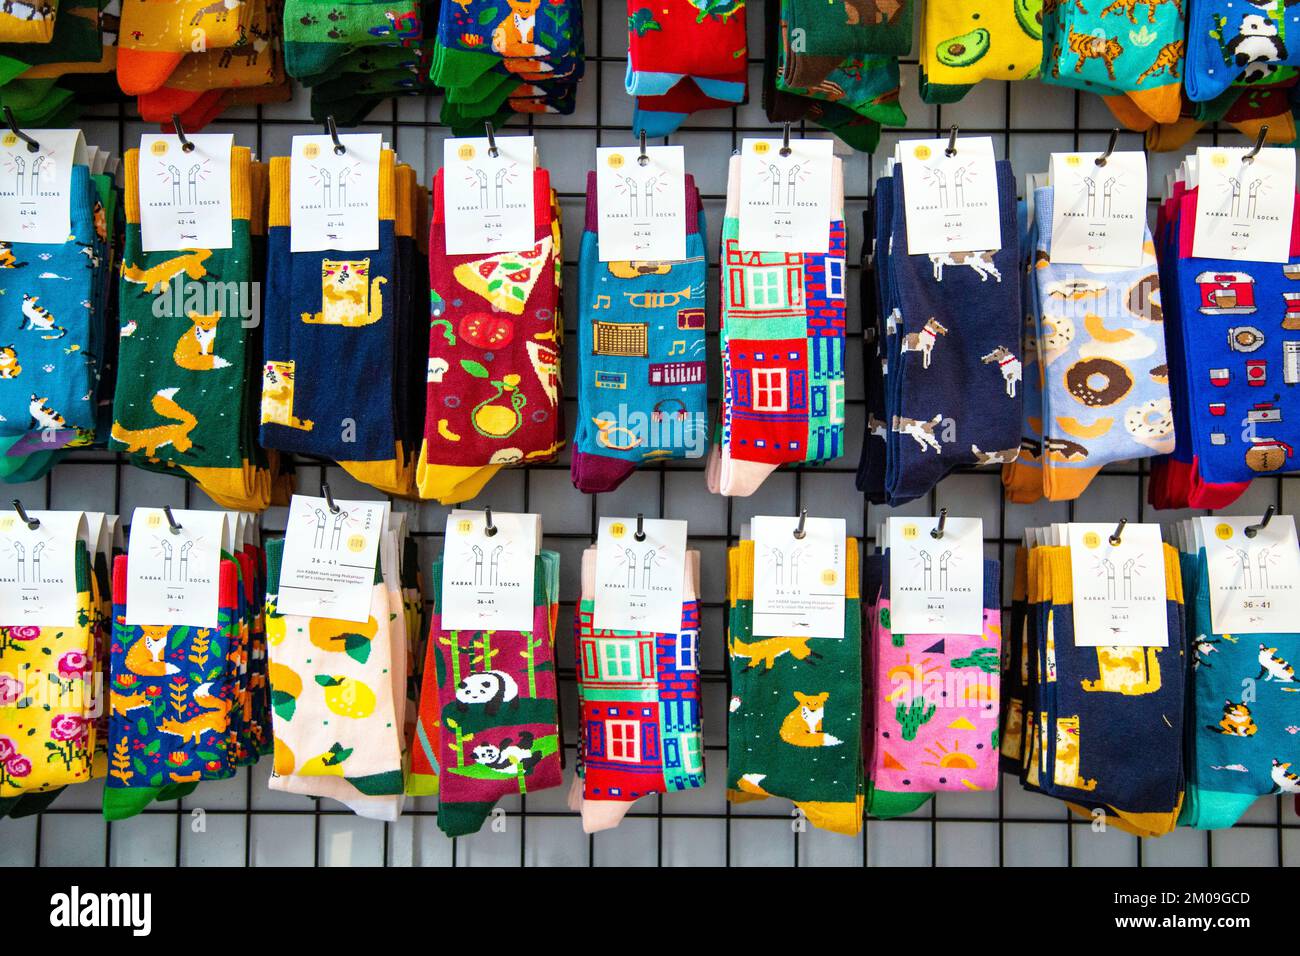 Sélection de chaussettes amusantes dans une boutique (Mamy Warsztat, Torun, Pologne) Banque D'Images